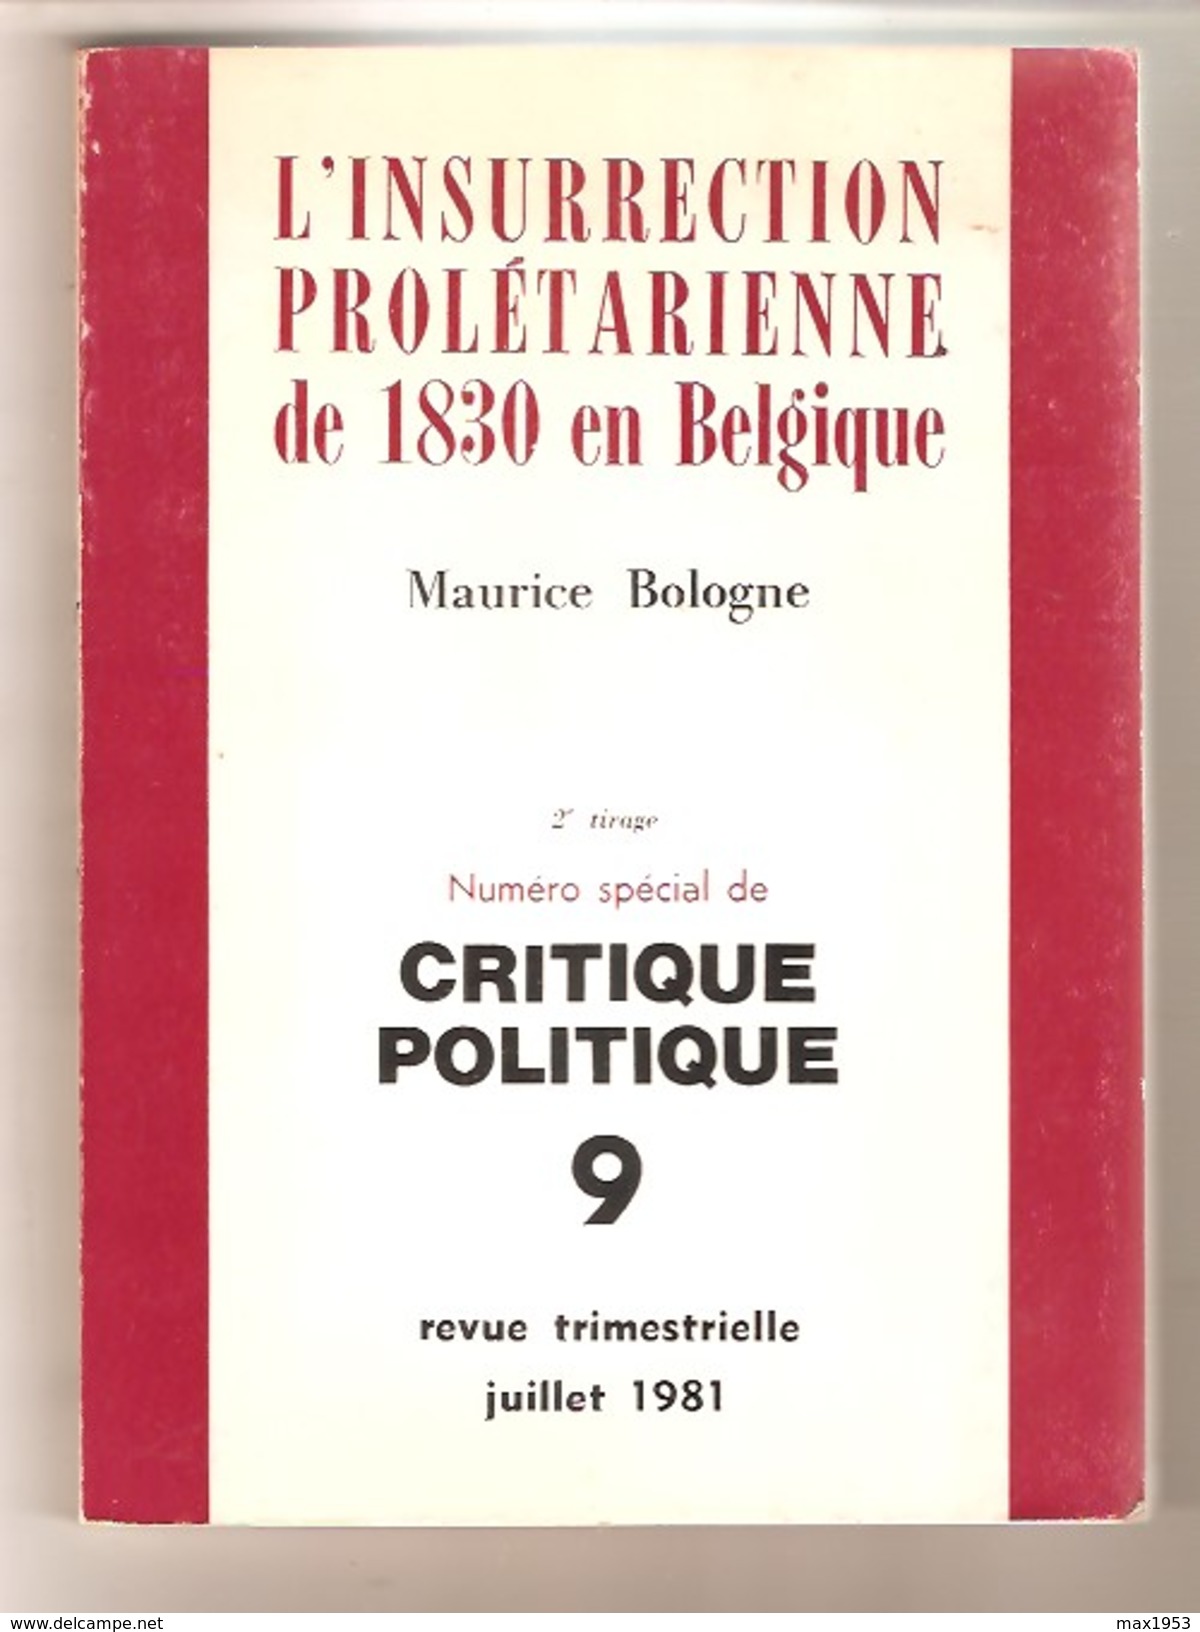 Maurice BOLOGNE - L'INSURRECTION PROLETARIENNE DE 1830 EN BELGIQUE -  Critique Politique N° 9 , 1981 - Belgium